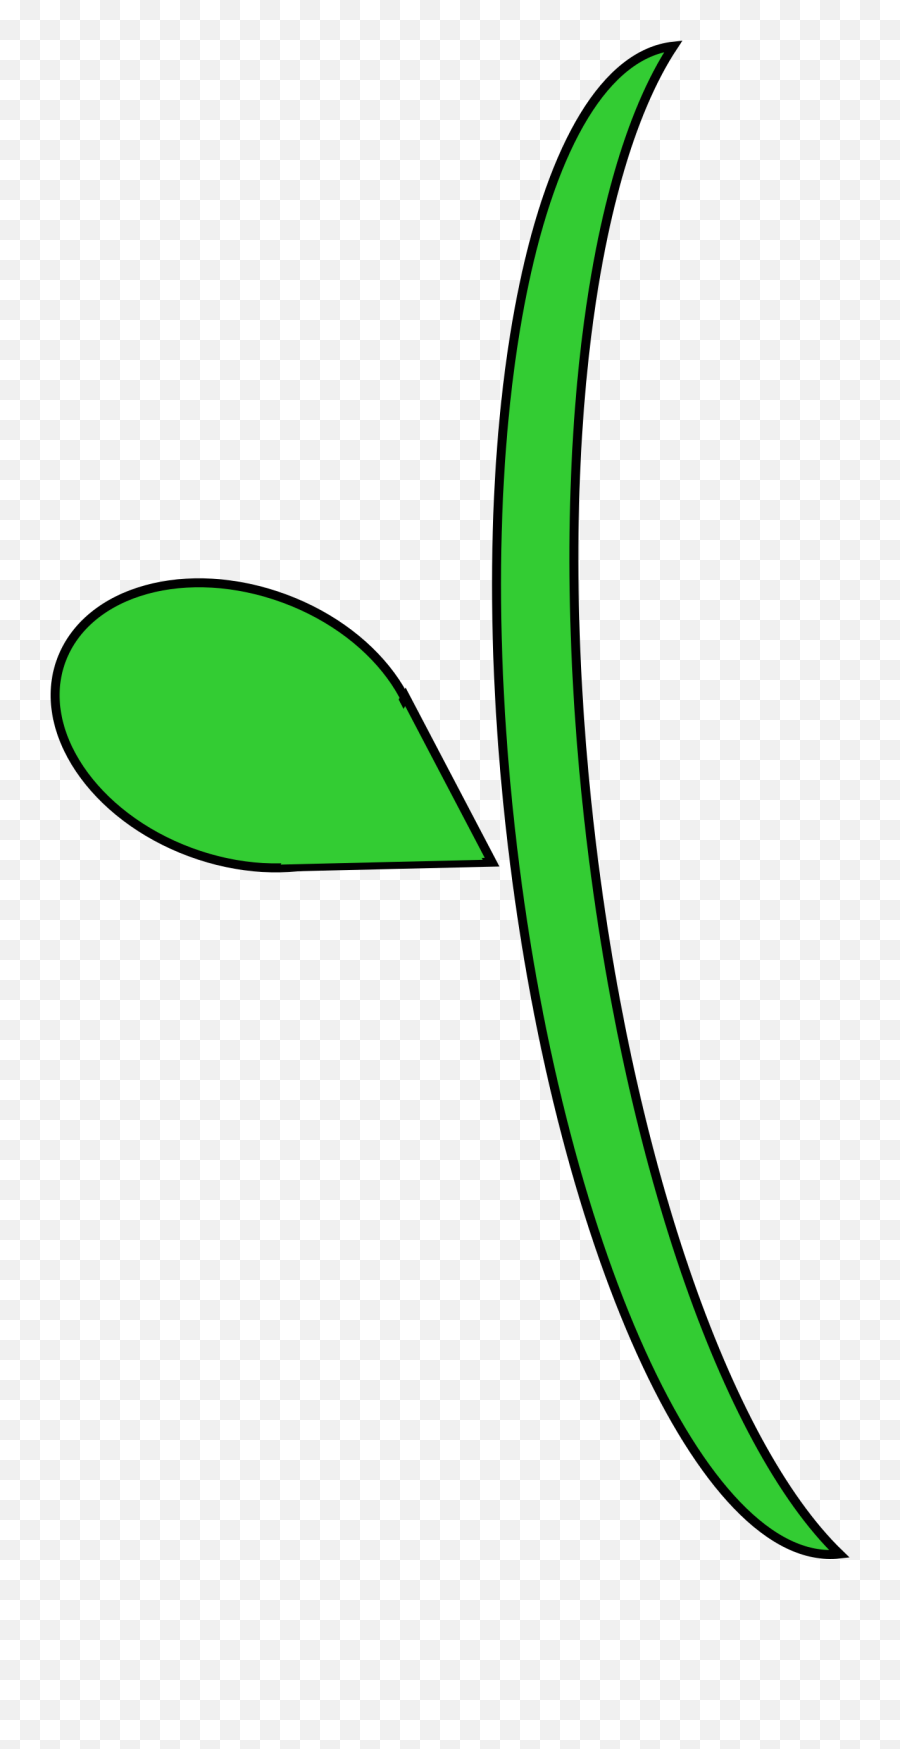 Clip Art Flower Stem - Stem And Leaf Clipart Png,Flower Stem Png